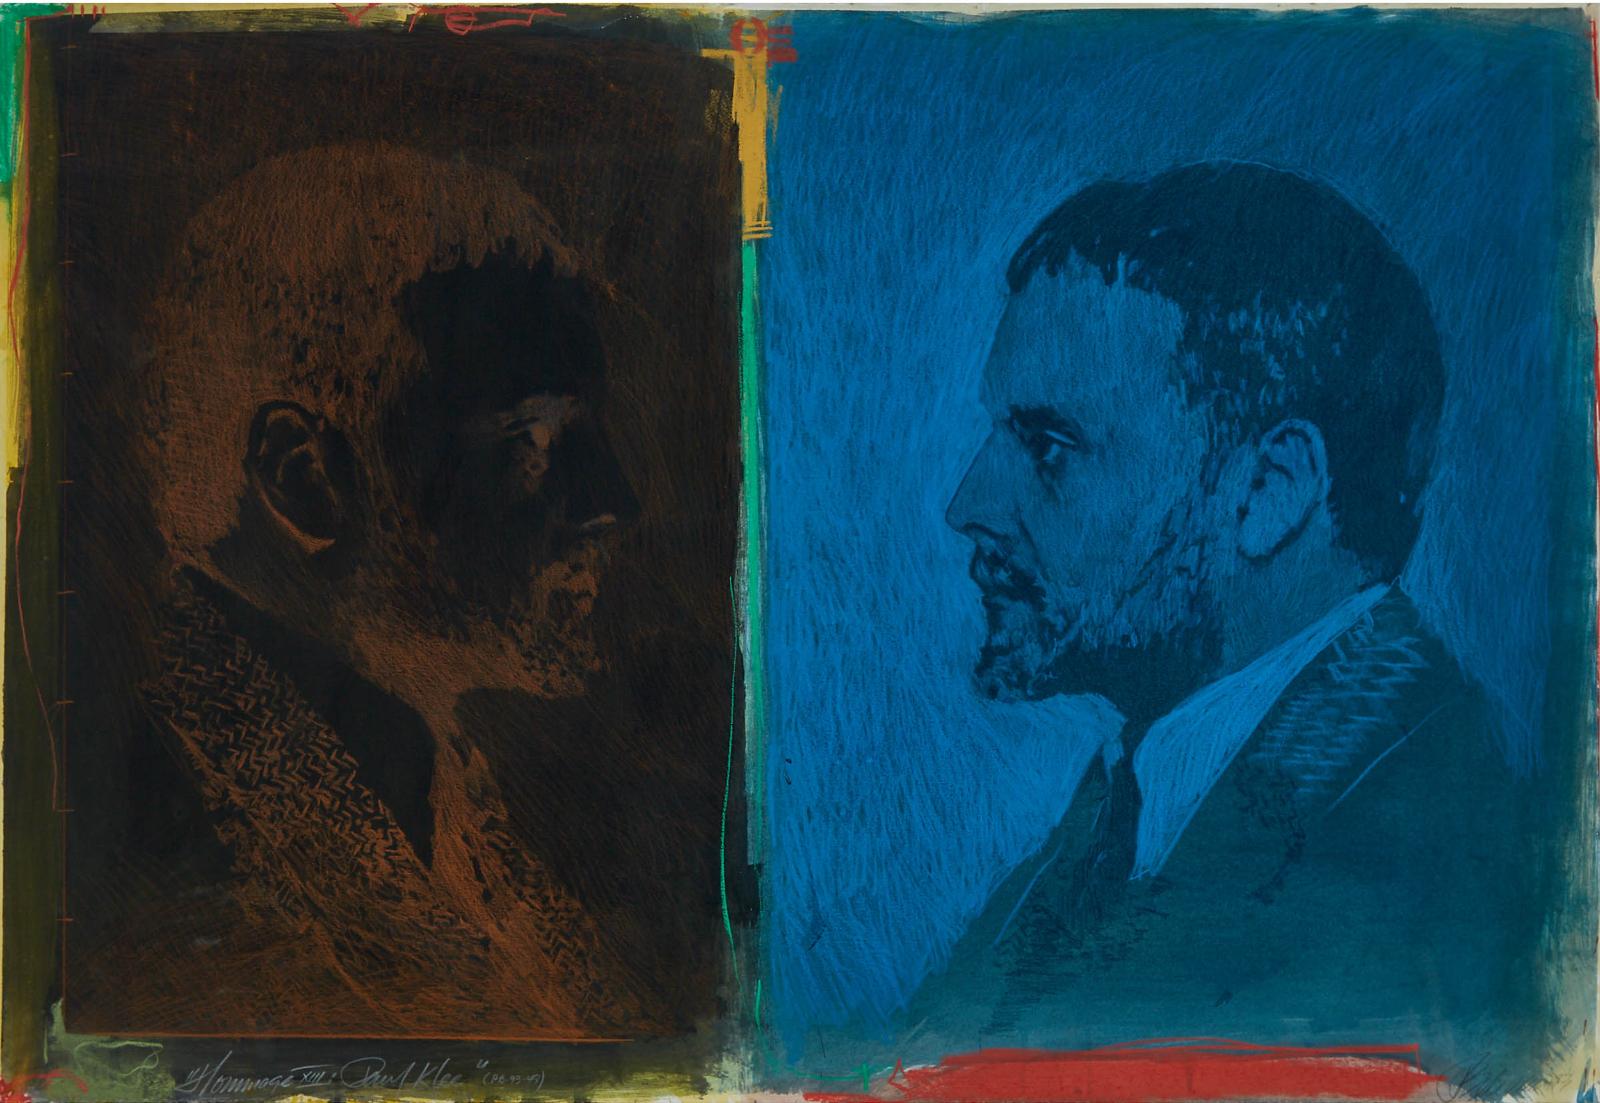 Paul Béliveau (1954) - Paul Klee